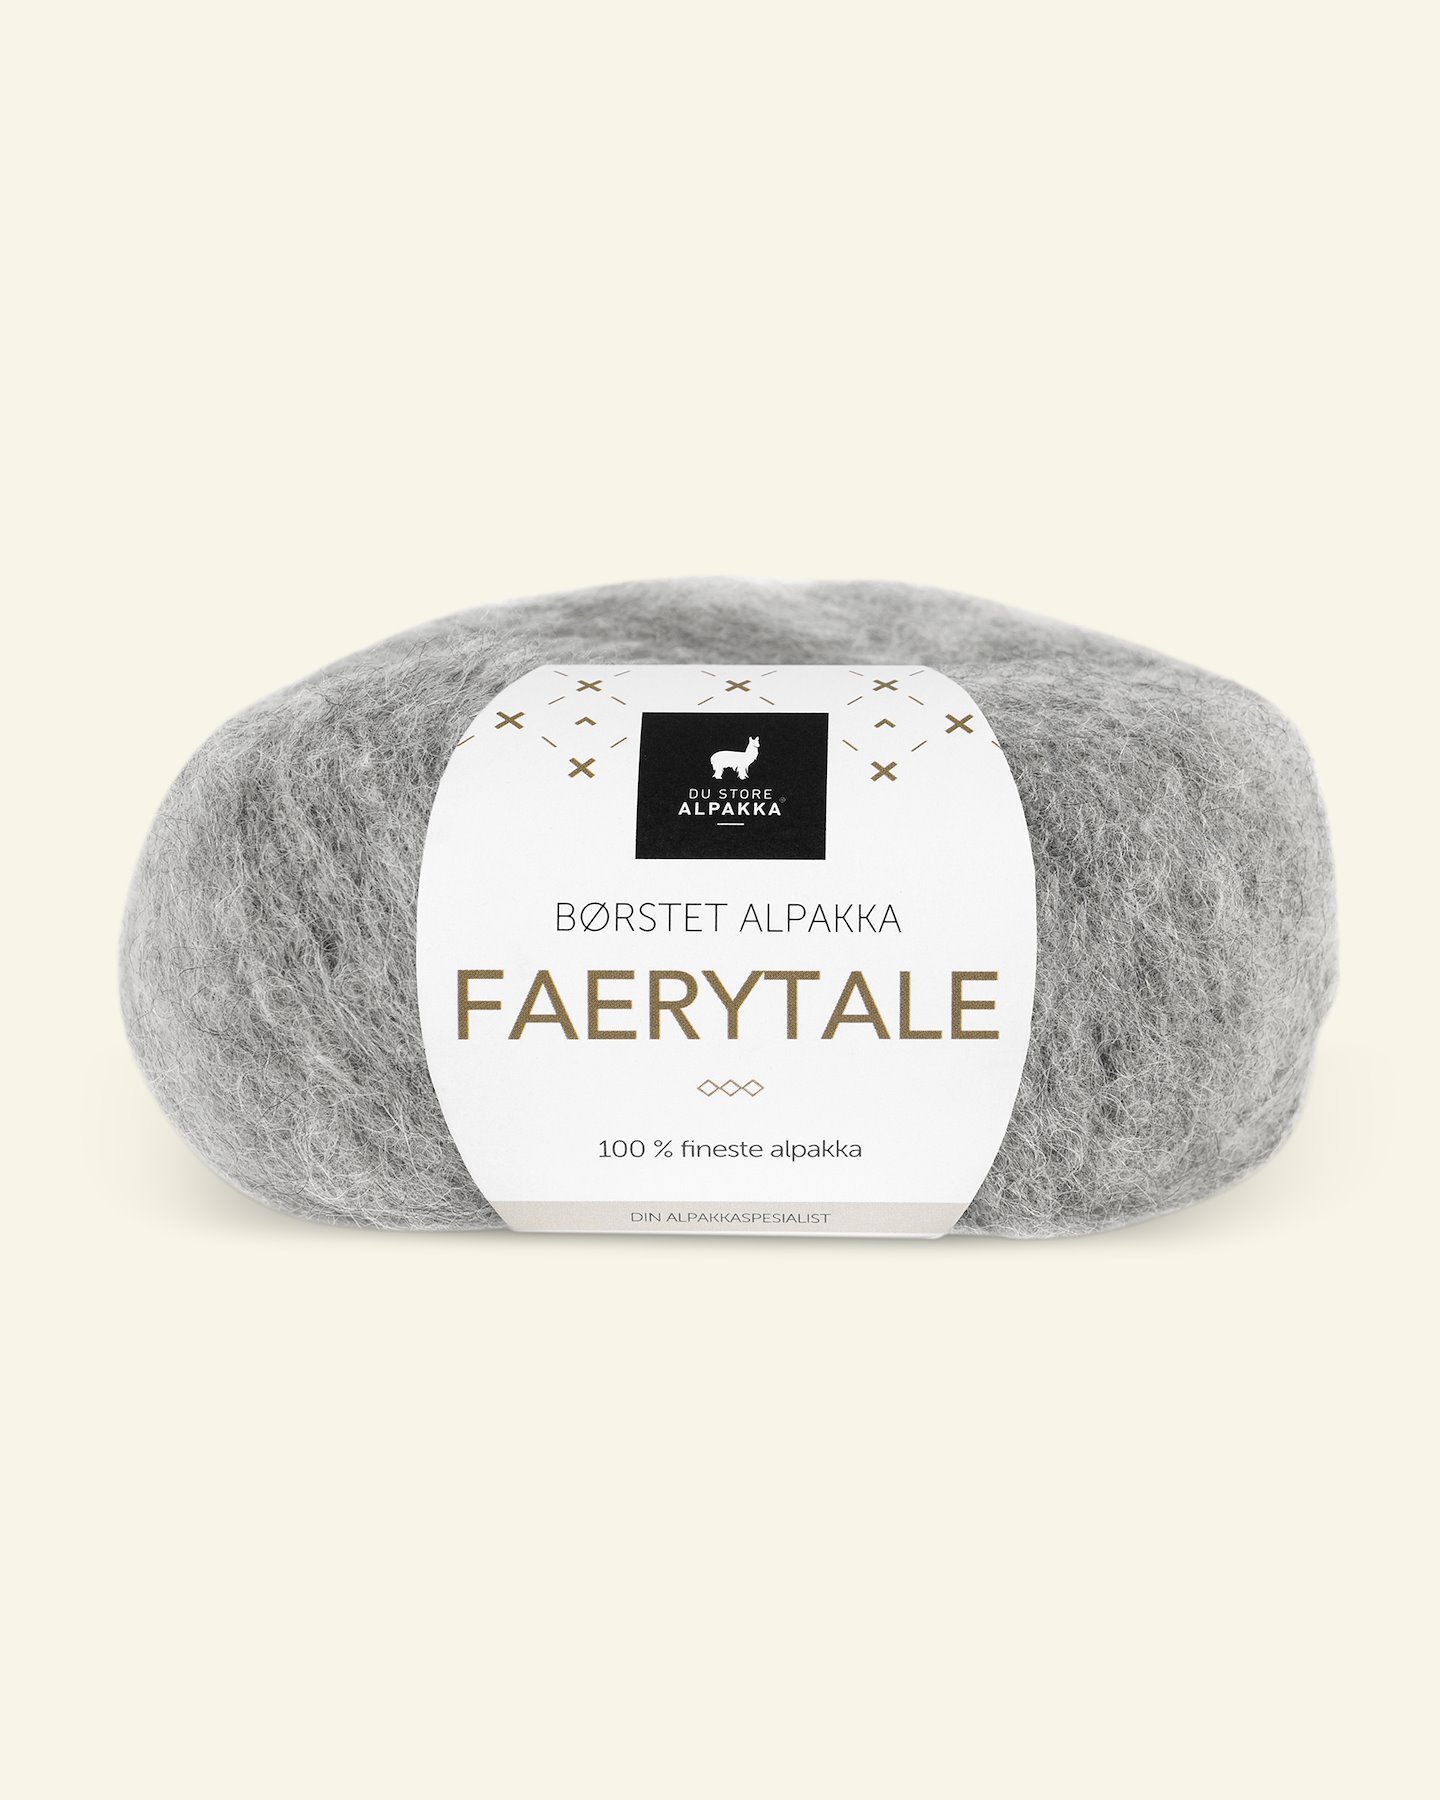 Du Store Alpakka, børsted alpakkagarn "Faerytale", lys grå mel (732) 90000587_pack